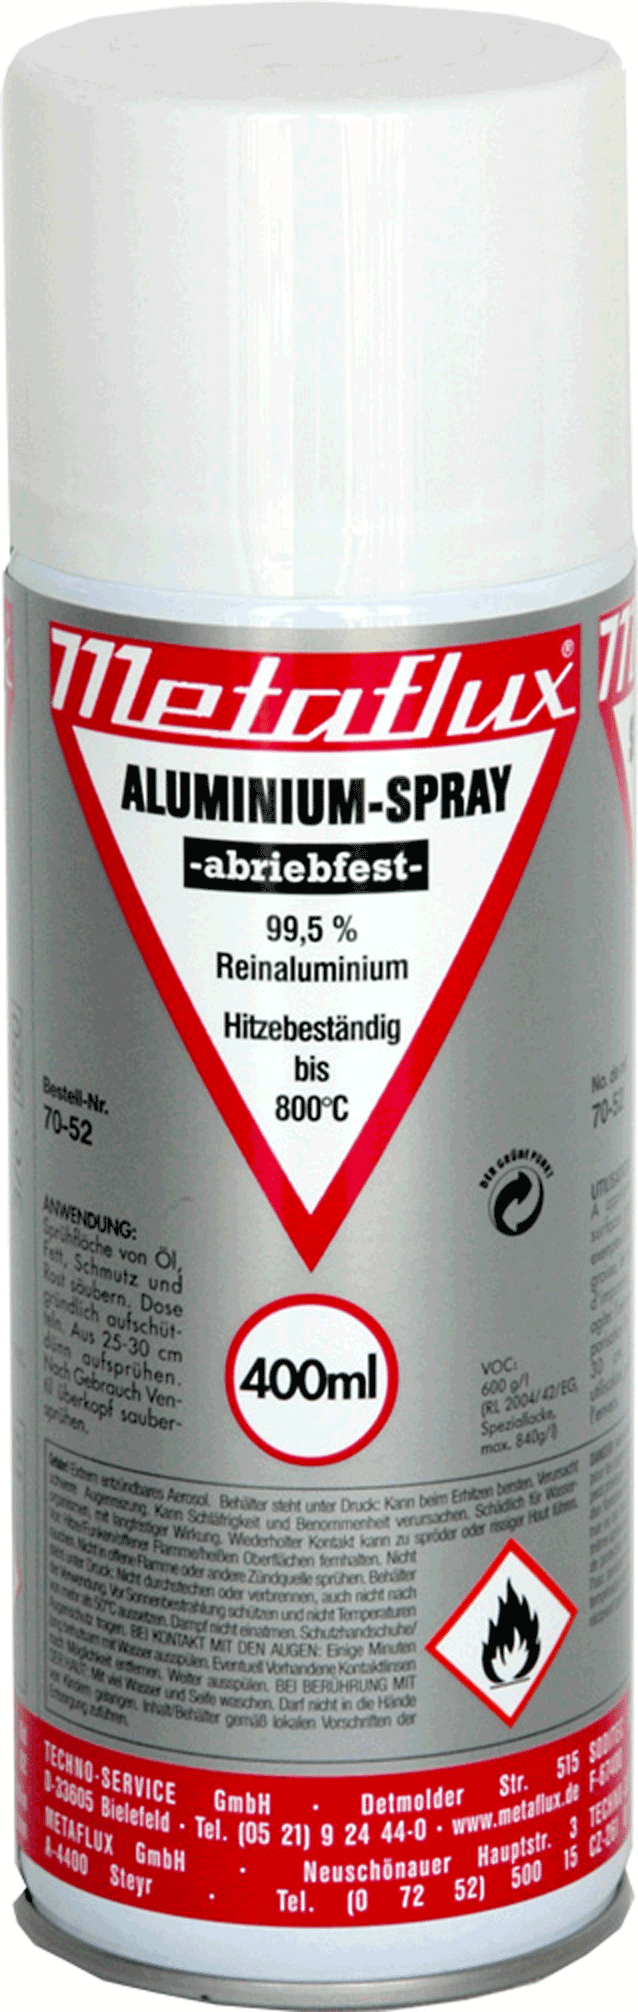 Metaflux Alu-Zink-Spray 70-42